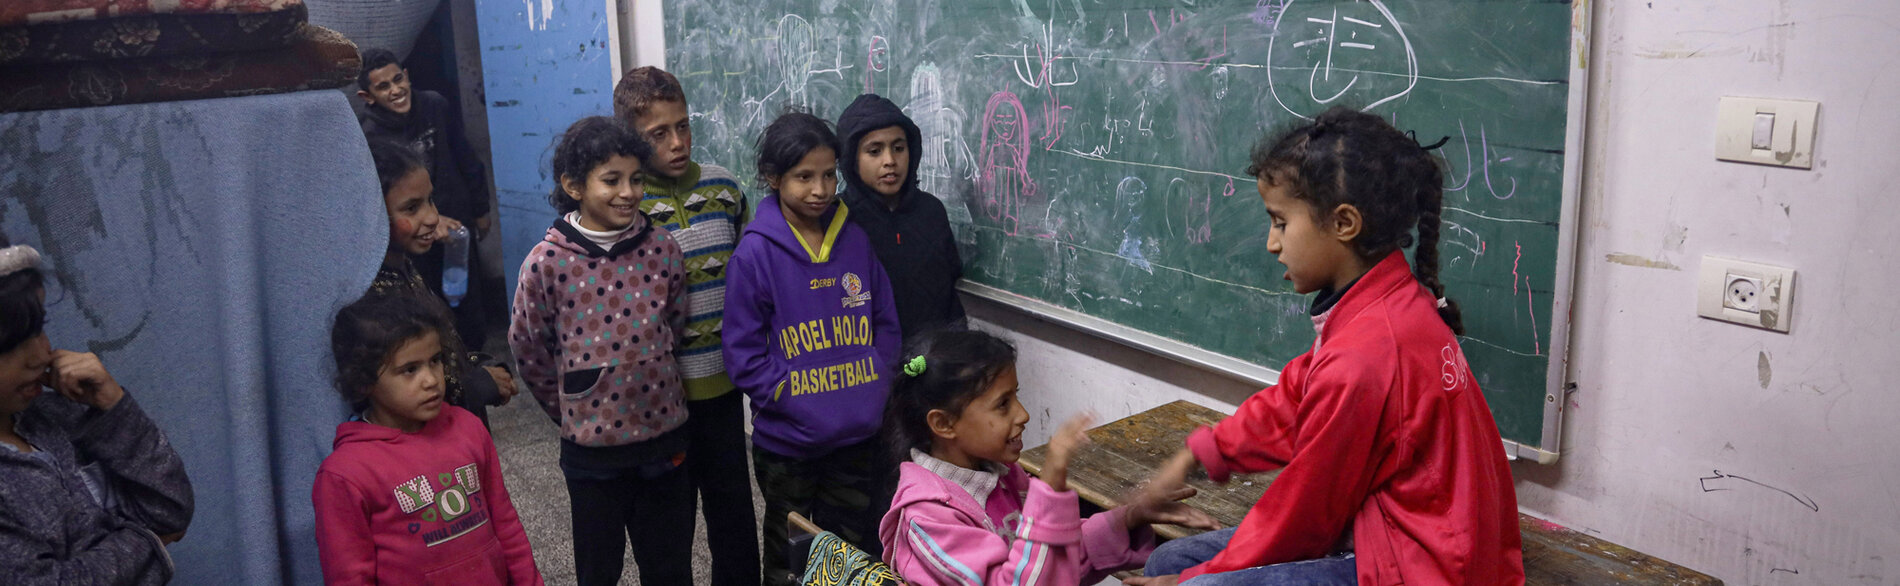 ילדים בבית ספר המשמש מחסה לעקורים בעיר רפיח. צילום: יוניסף / אל-באבא